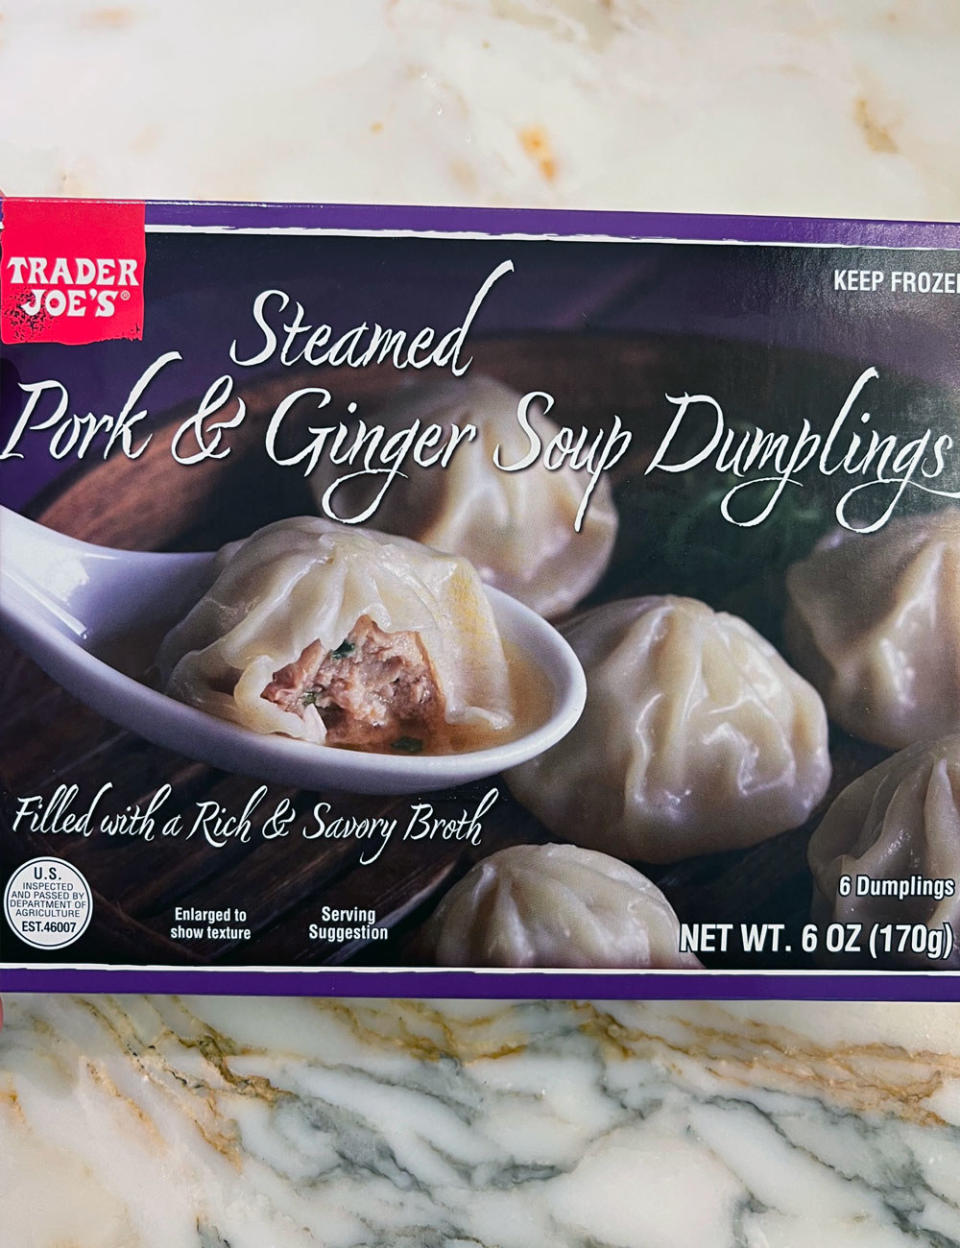 A Box of Steamed Pork & Ginger Soup Dumplings